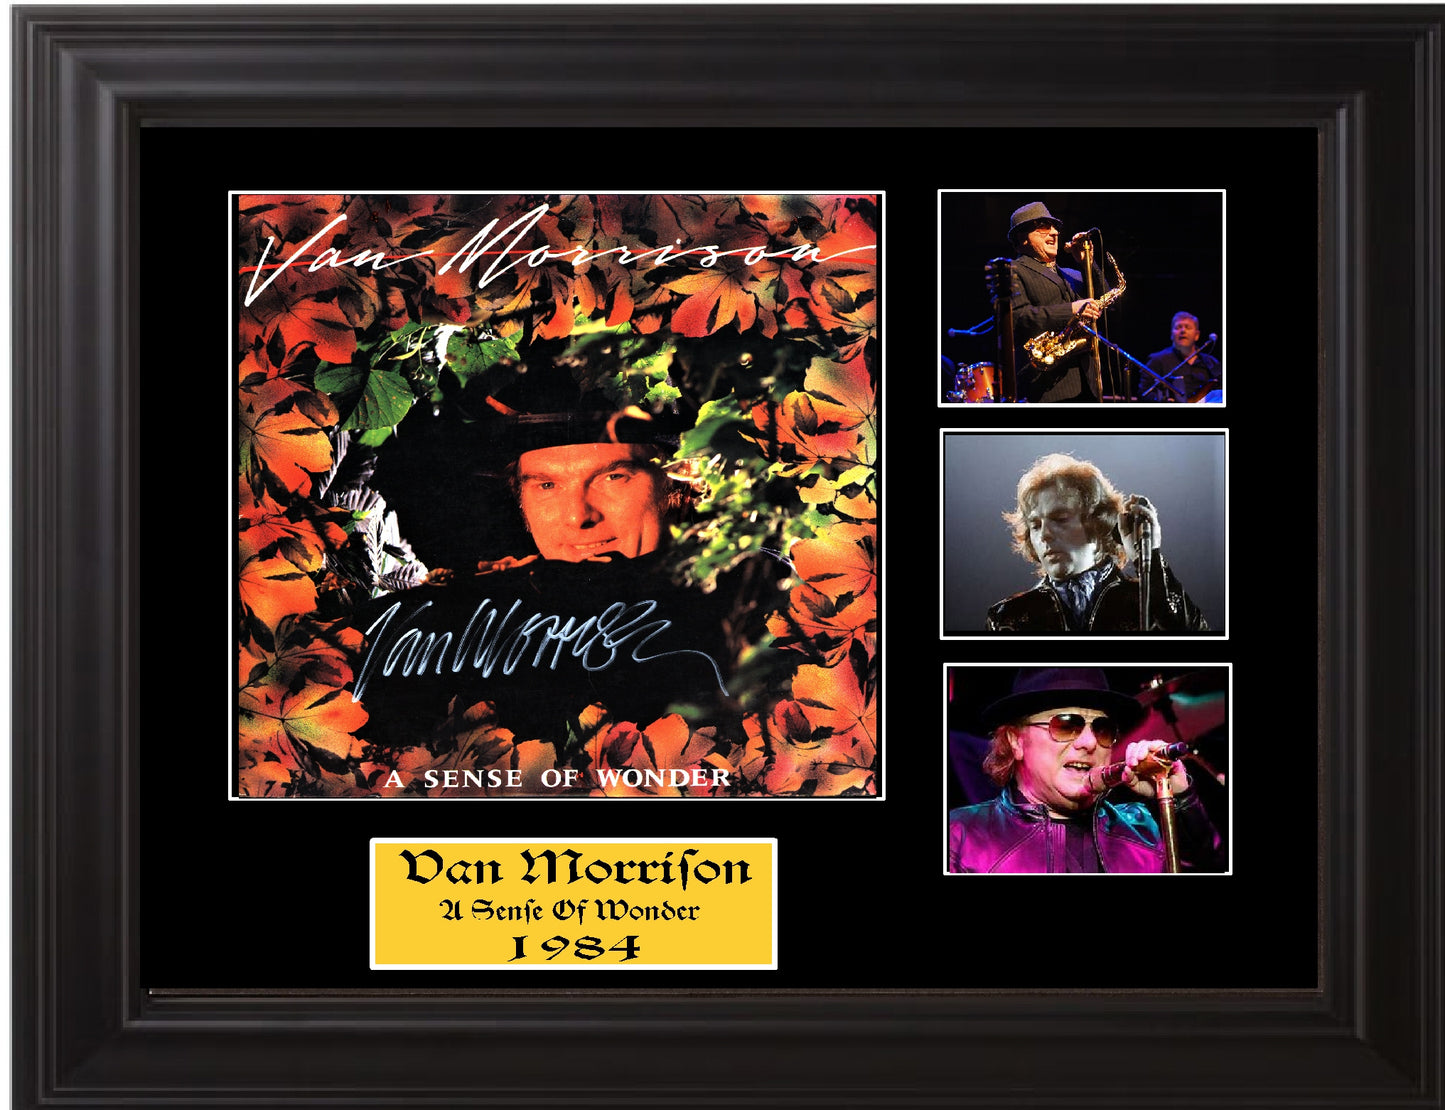 Van Morrison Signed Album Lp "A Sense Of Wonder" - Zion Graphic Collectibles